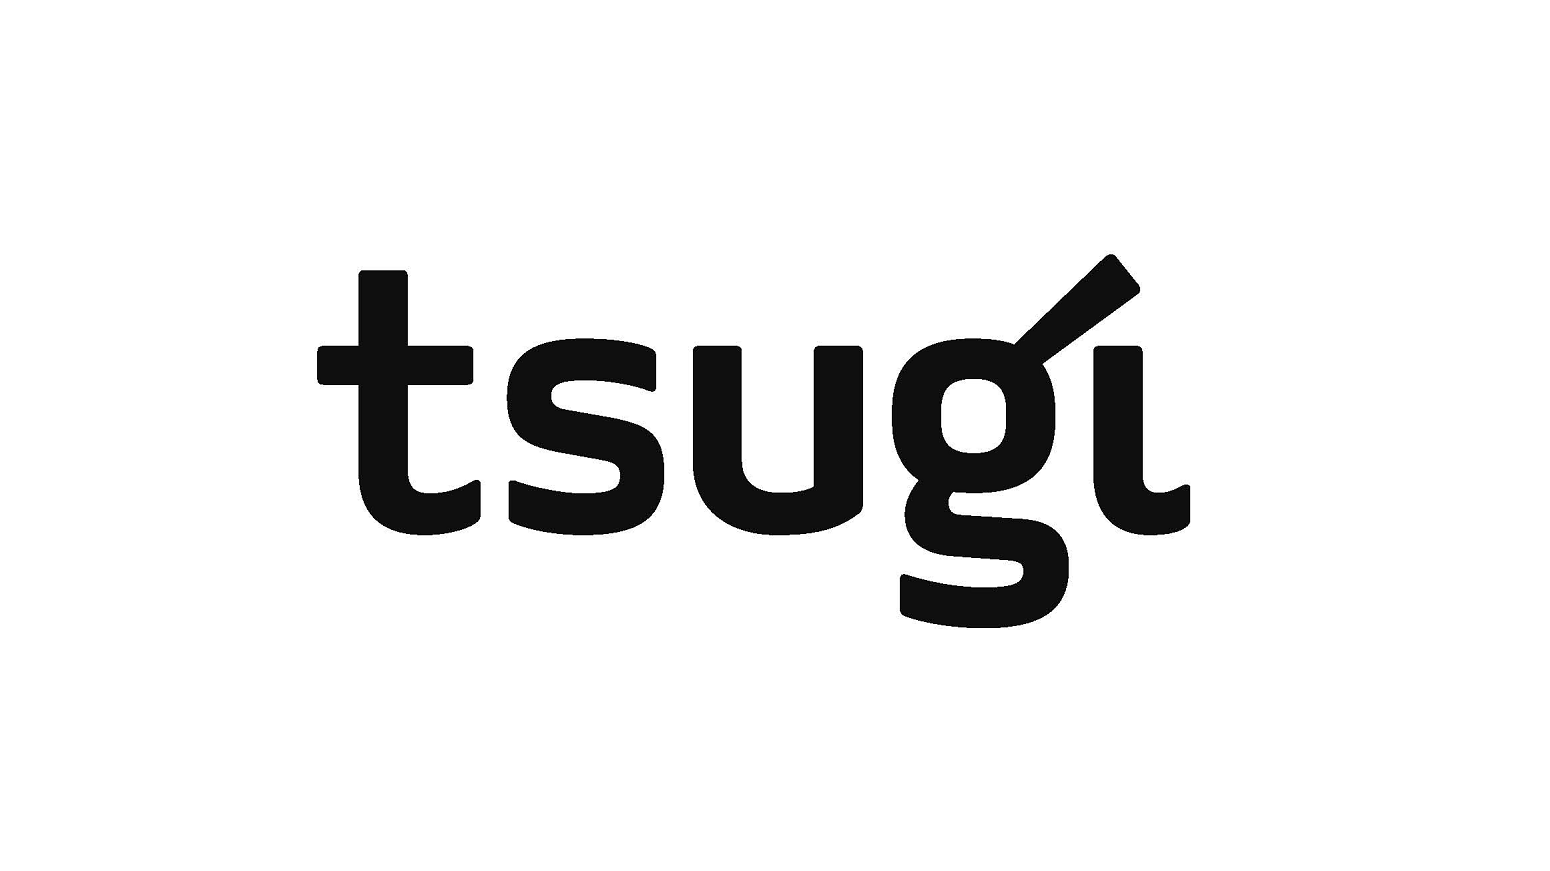 Tsugi